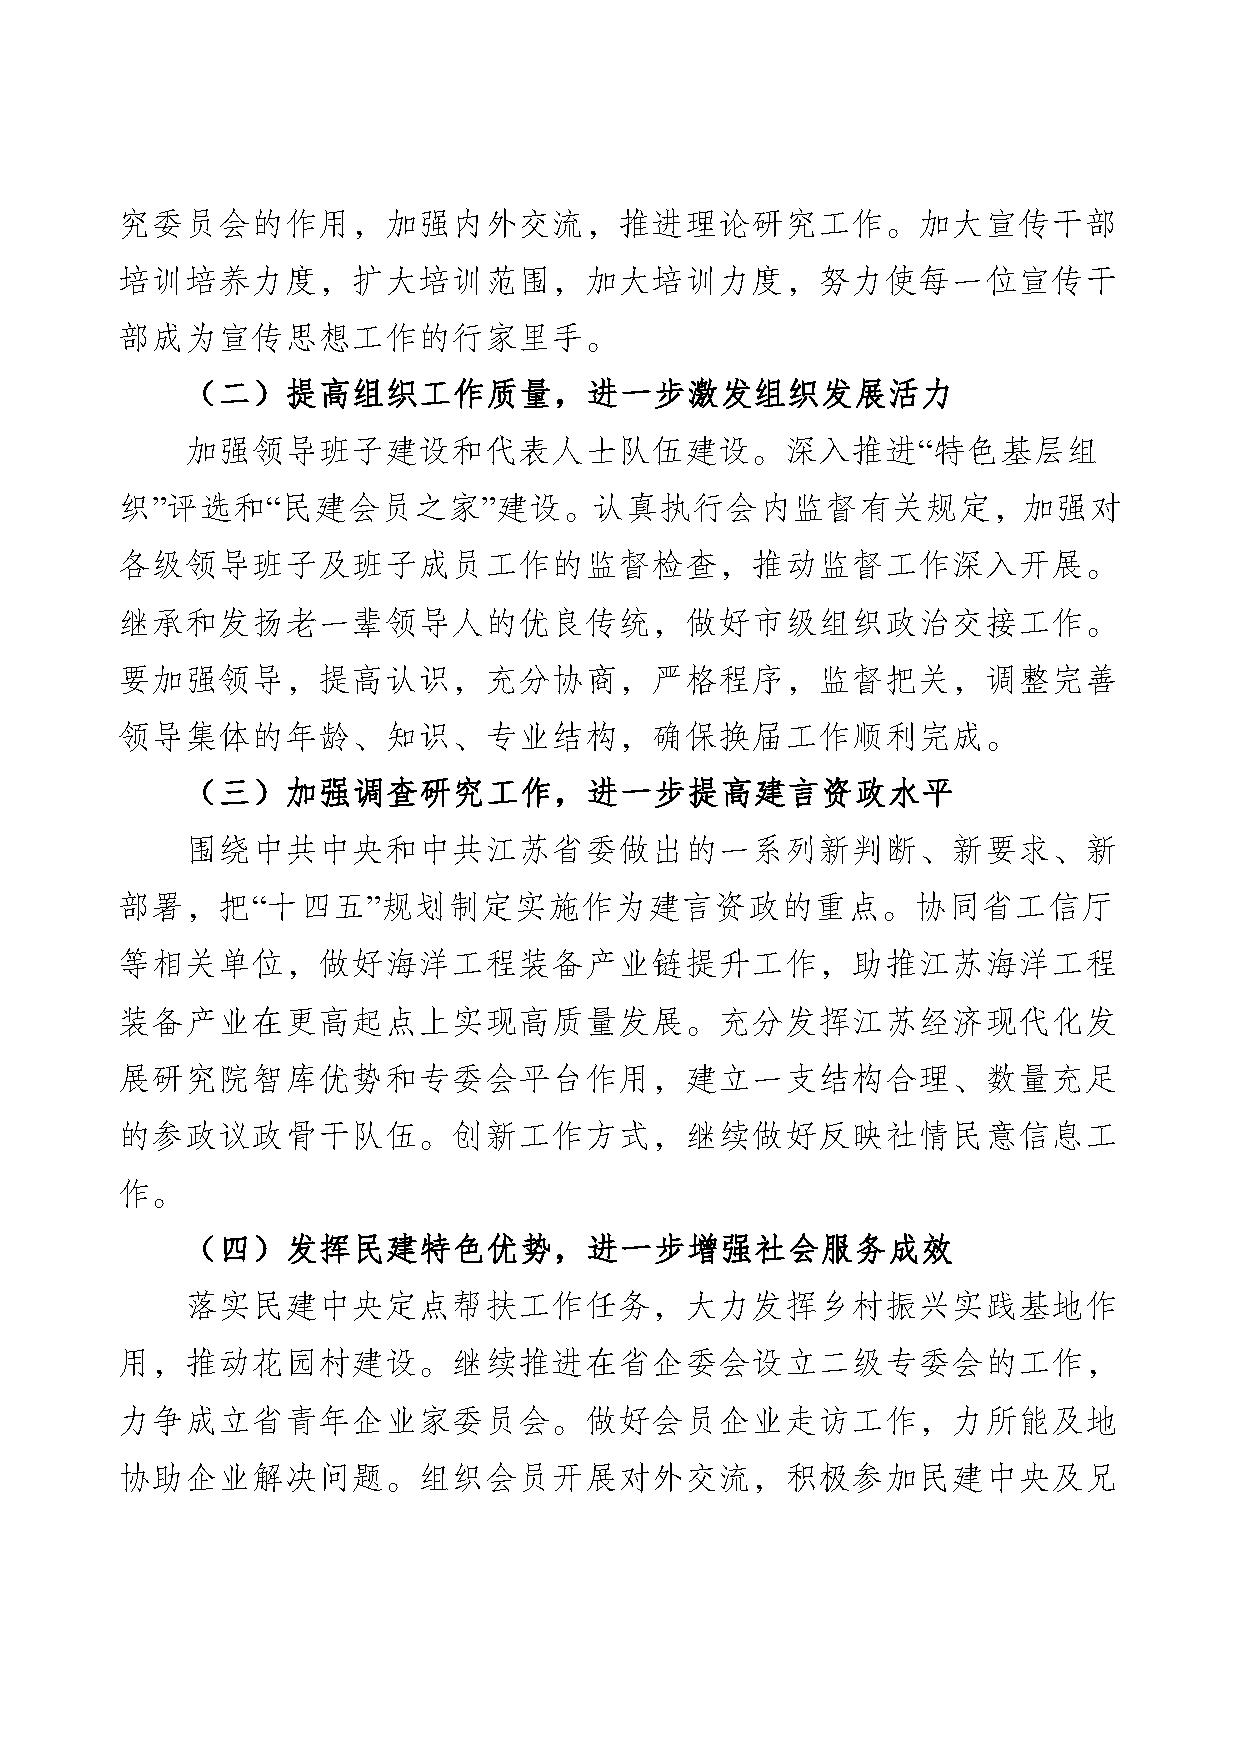 2021年度中国民主建国会江苏省委员会部门预算公开-5.jpg